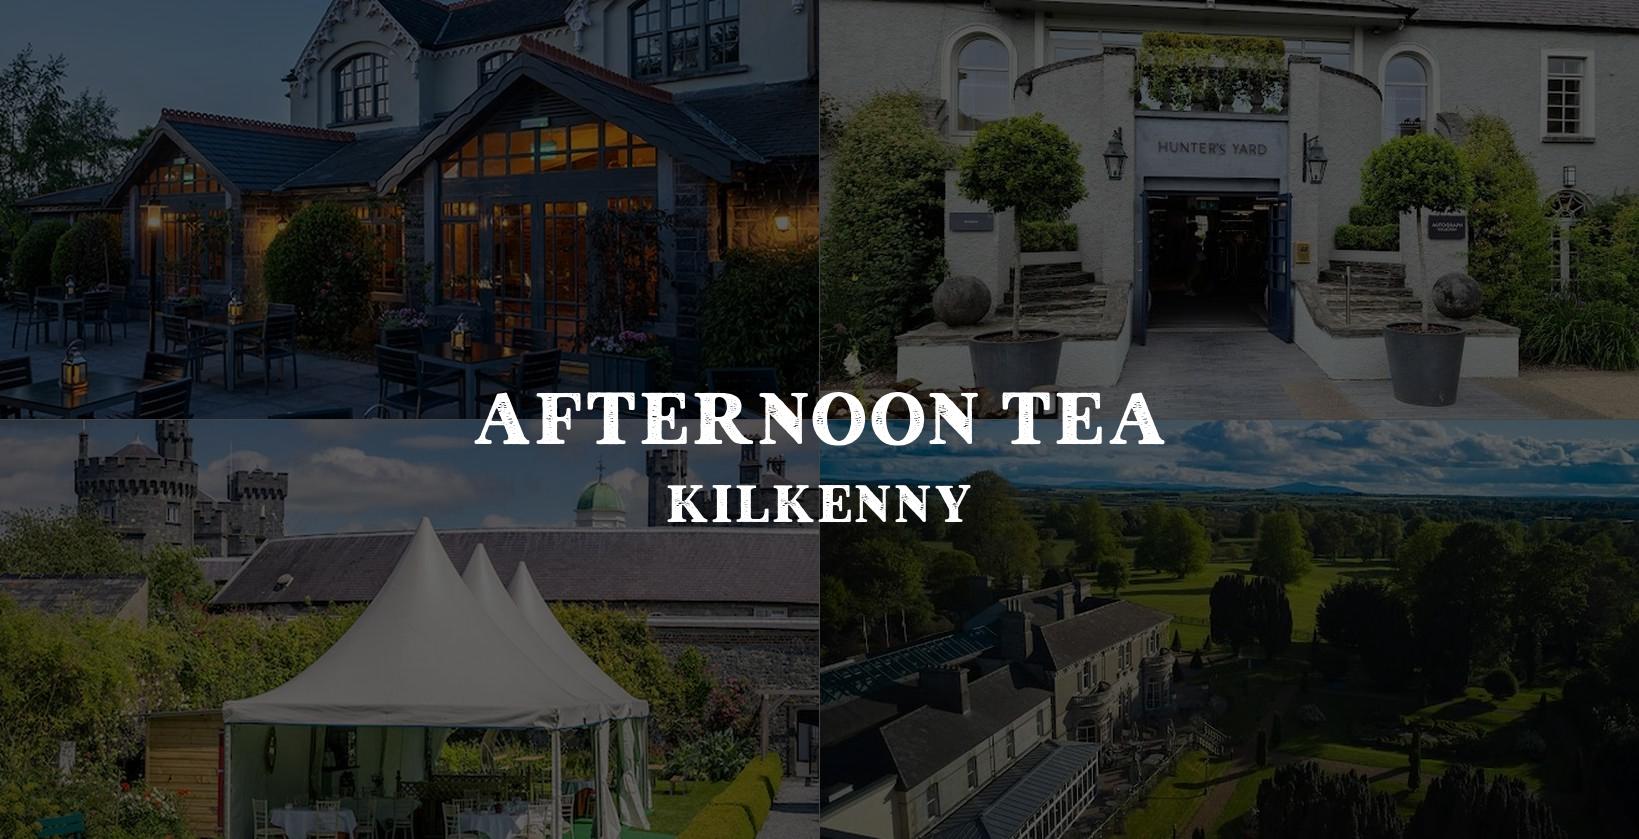 Best afternoon tea in kilkenny